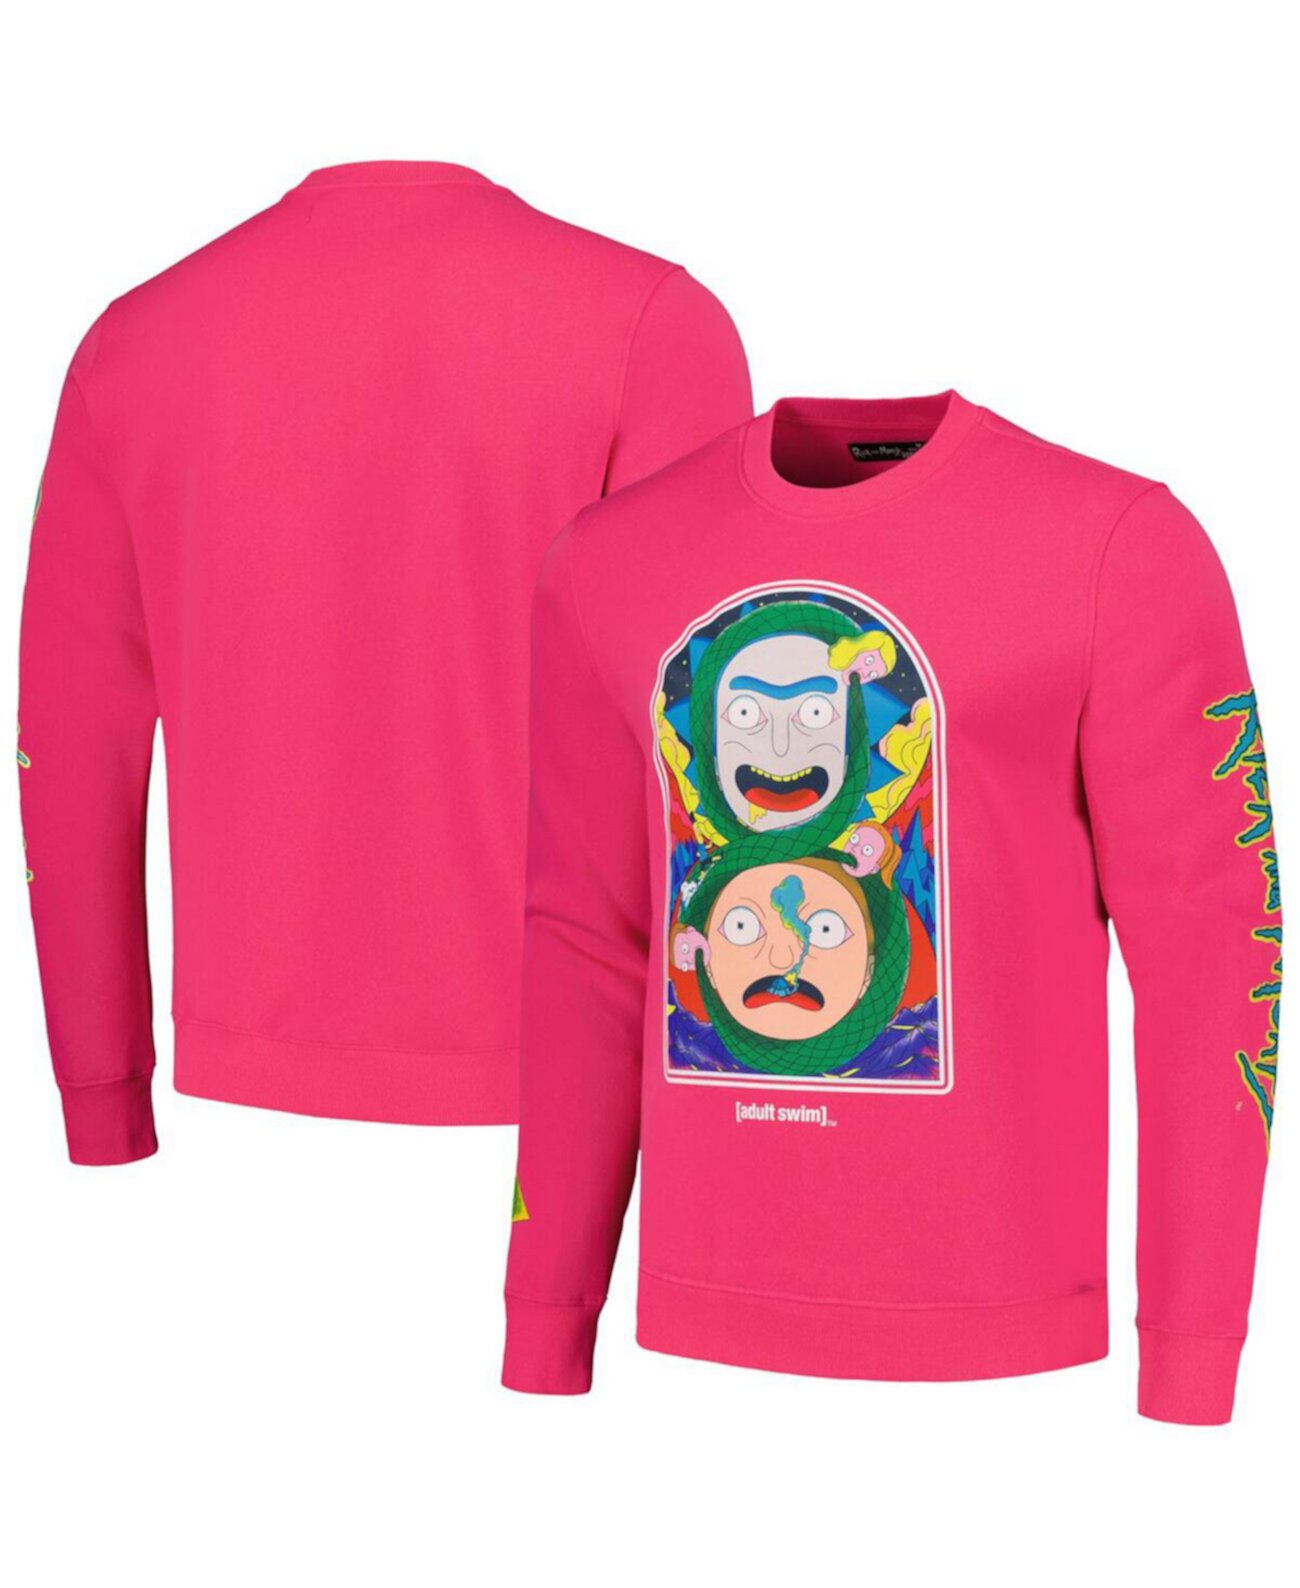 Мужской розовый пуловер с изображением Рика и Морти Freeze Max